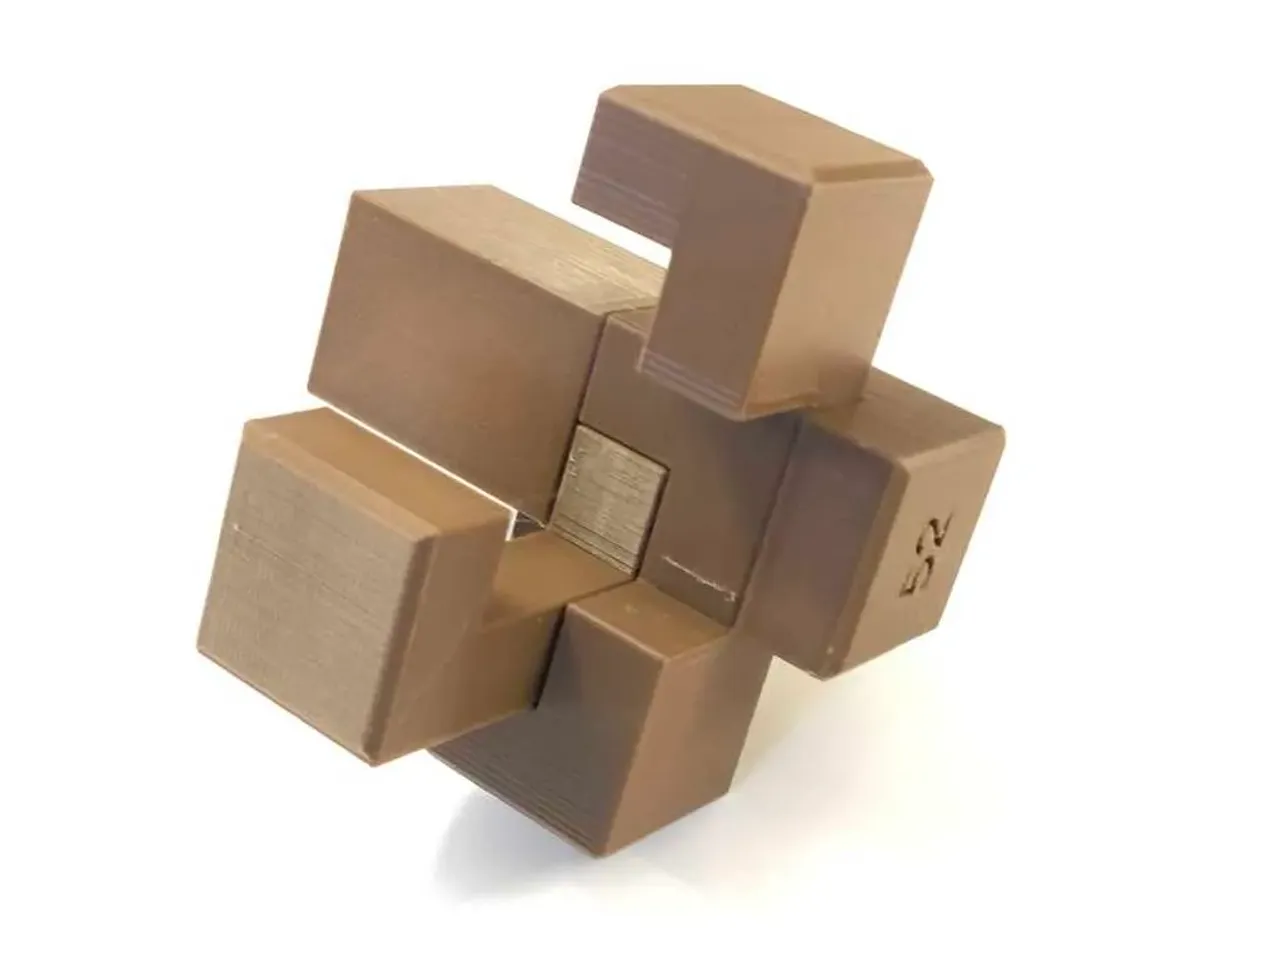 Construct Puzzle - Interlocking 24 piece Burr Puzzle